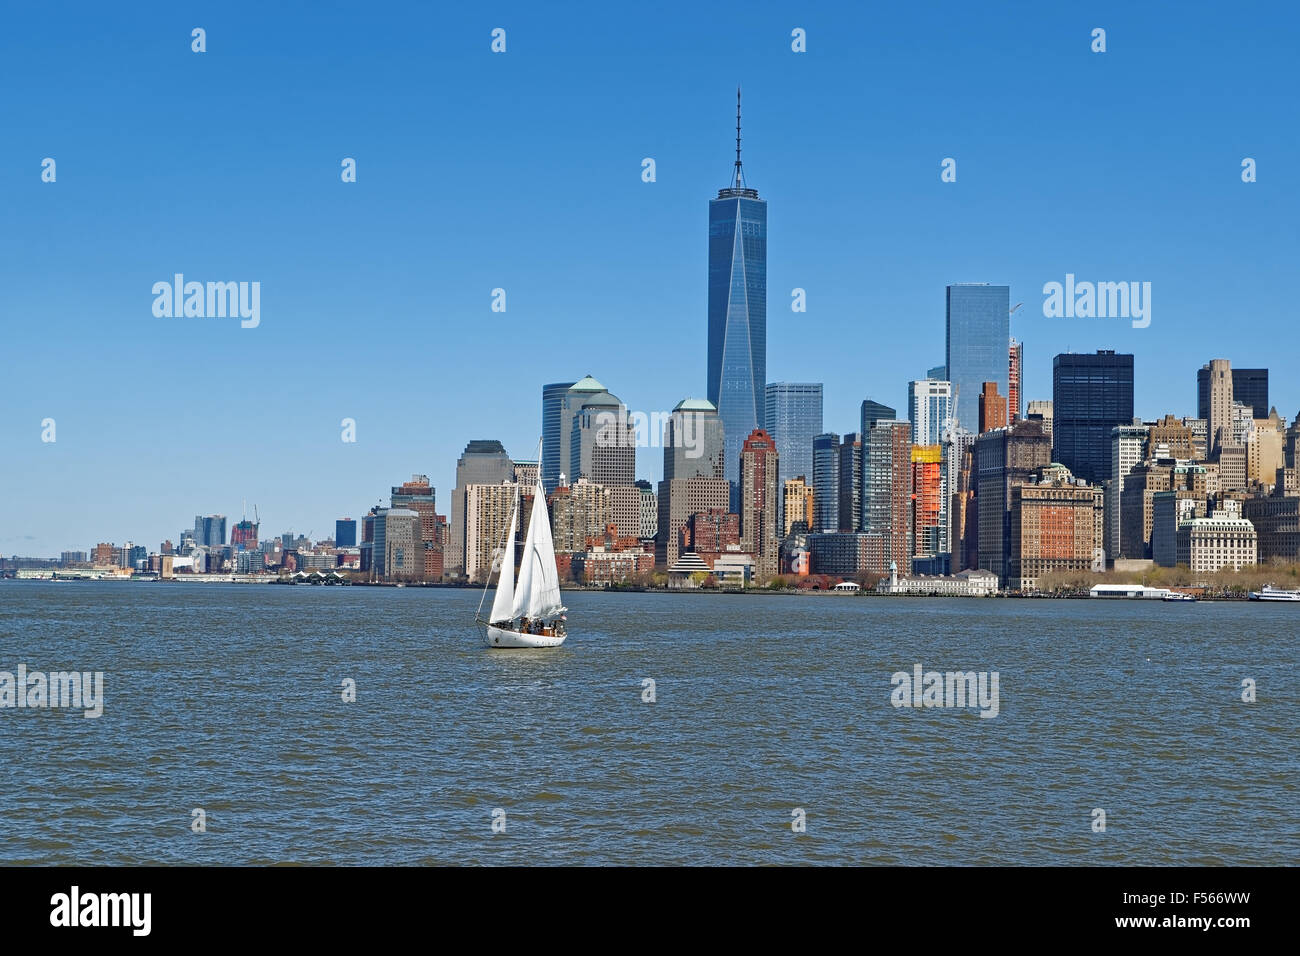 Vista della città di New York skyline di Manhattan oltre il fiume Hudson. Manhattan è la parte centrale di New York. Si tratta di uno dei leader culturale e i centri economici e in tutto il mondo Foto Stock